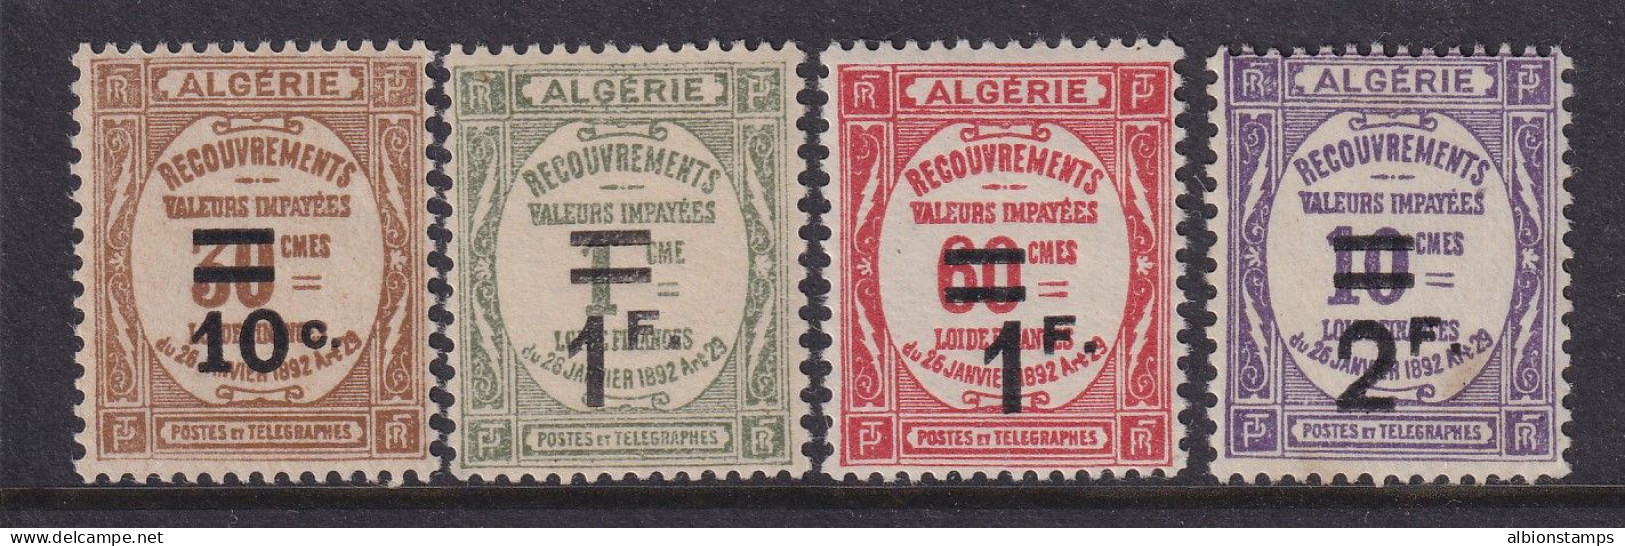 Algeria, Scott J21-J24 (Yvert TT21-TT24), MLH - Postage Due